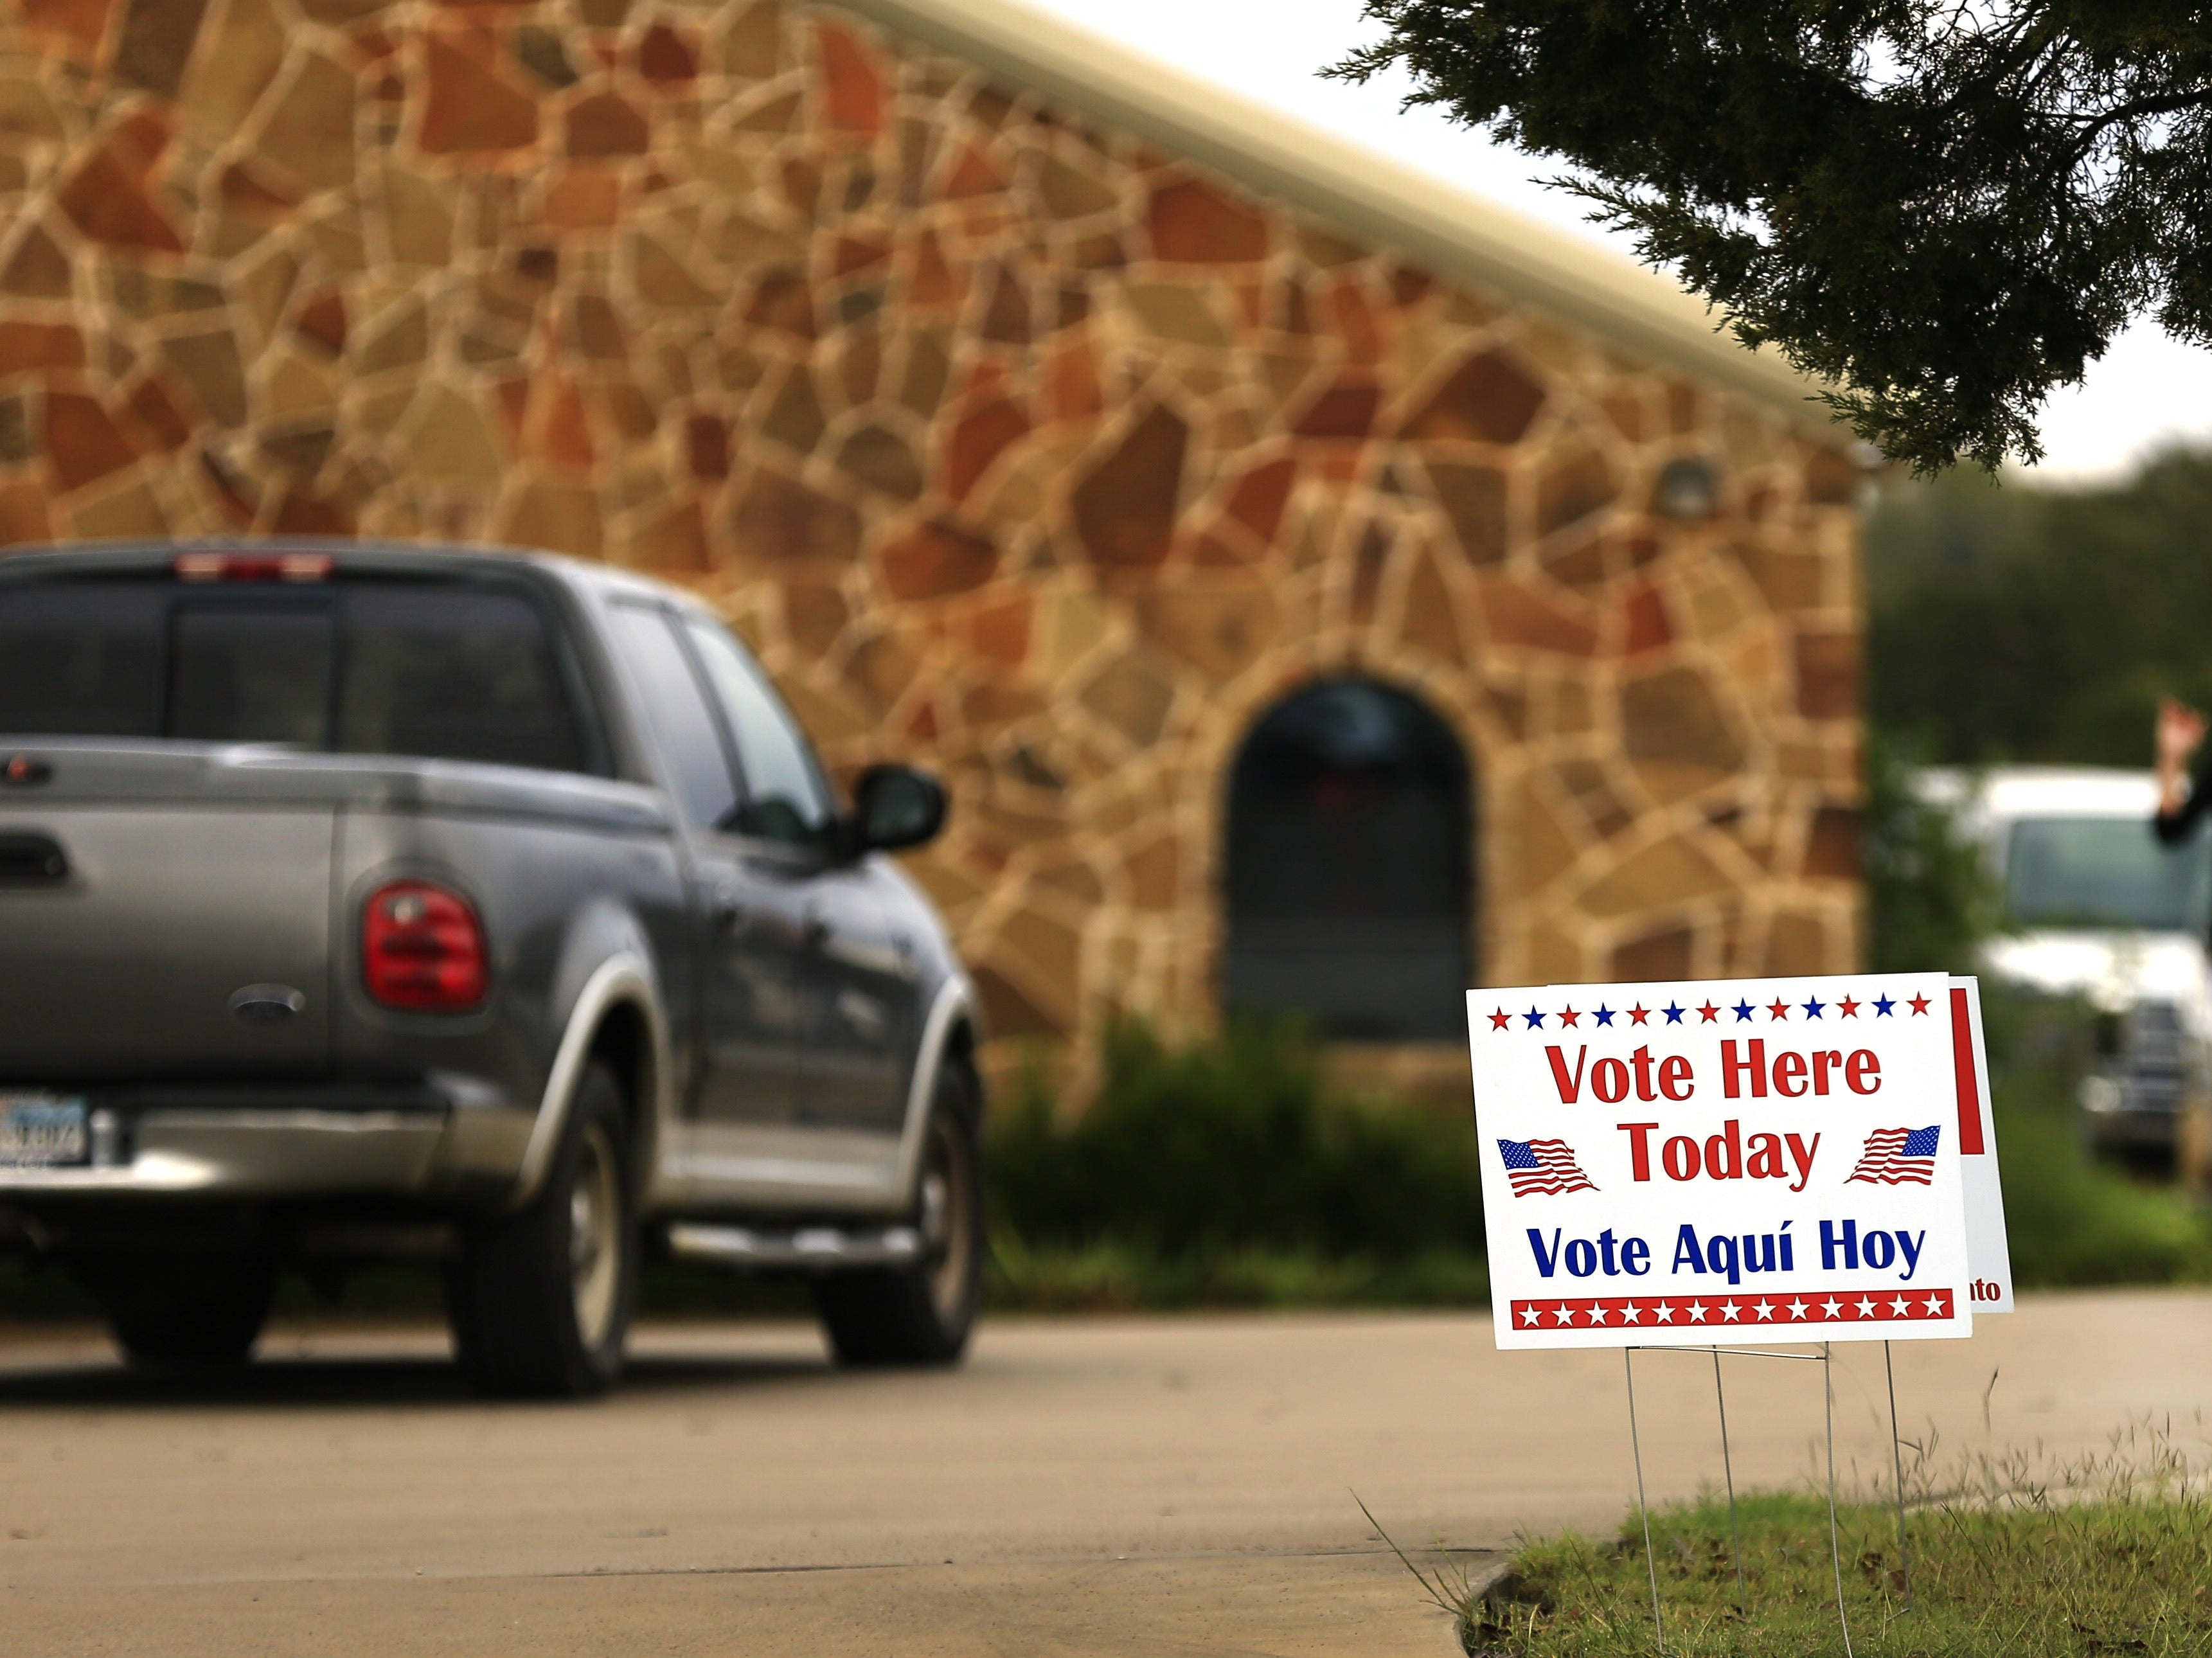 <p>Los votantes llegan a un lugar de votación para emitir su voto el 8 de noviembre de 2016 en Brock, Texas.</p>